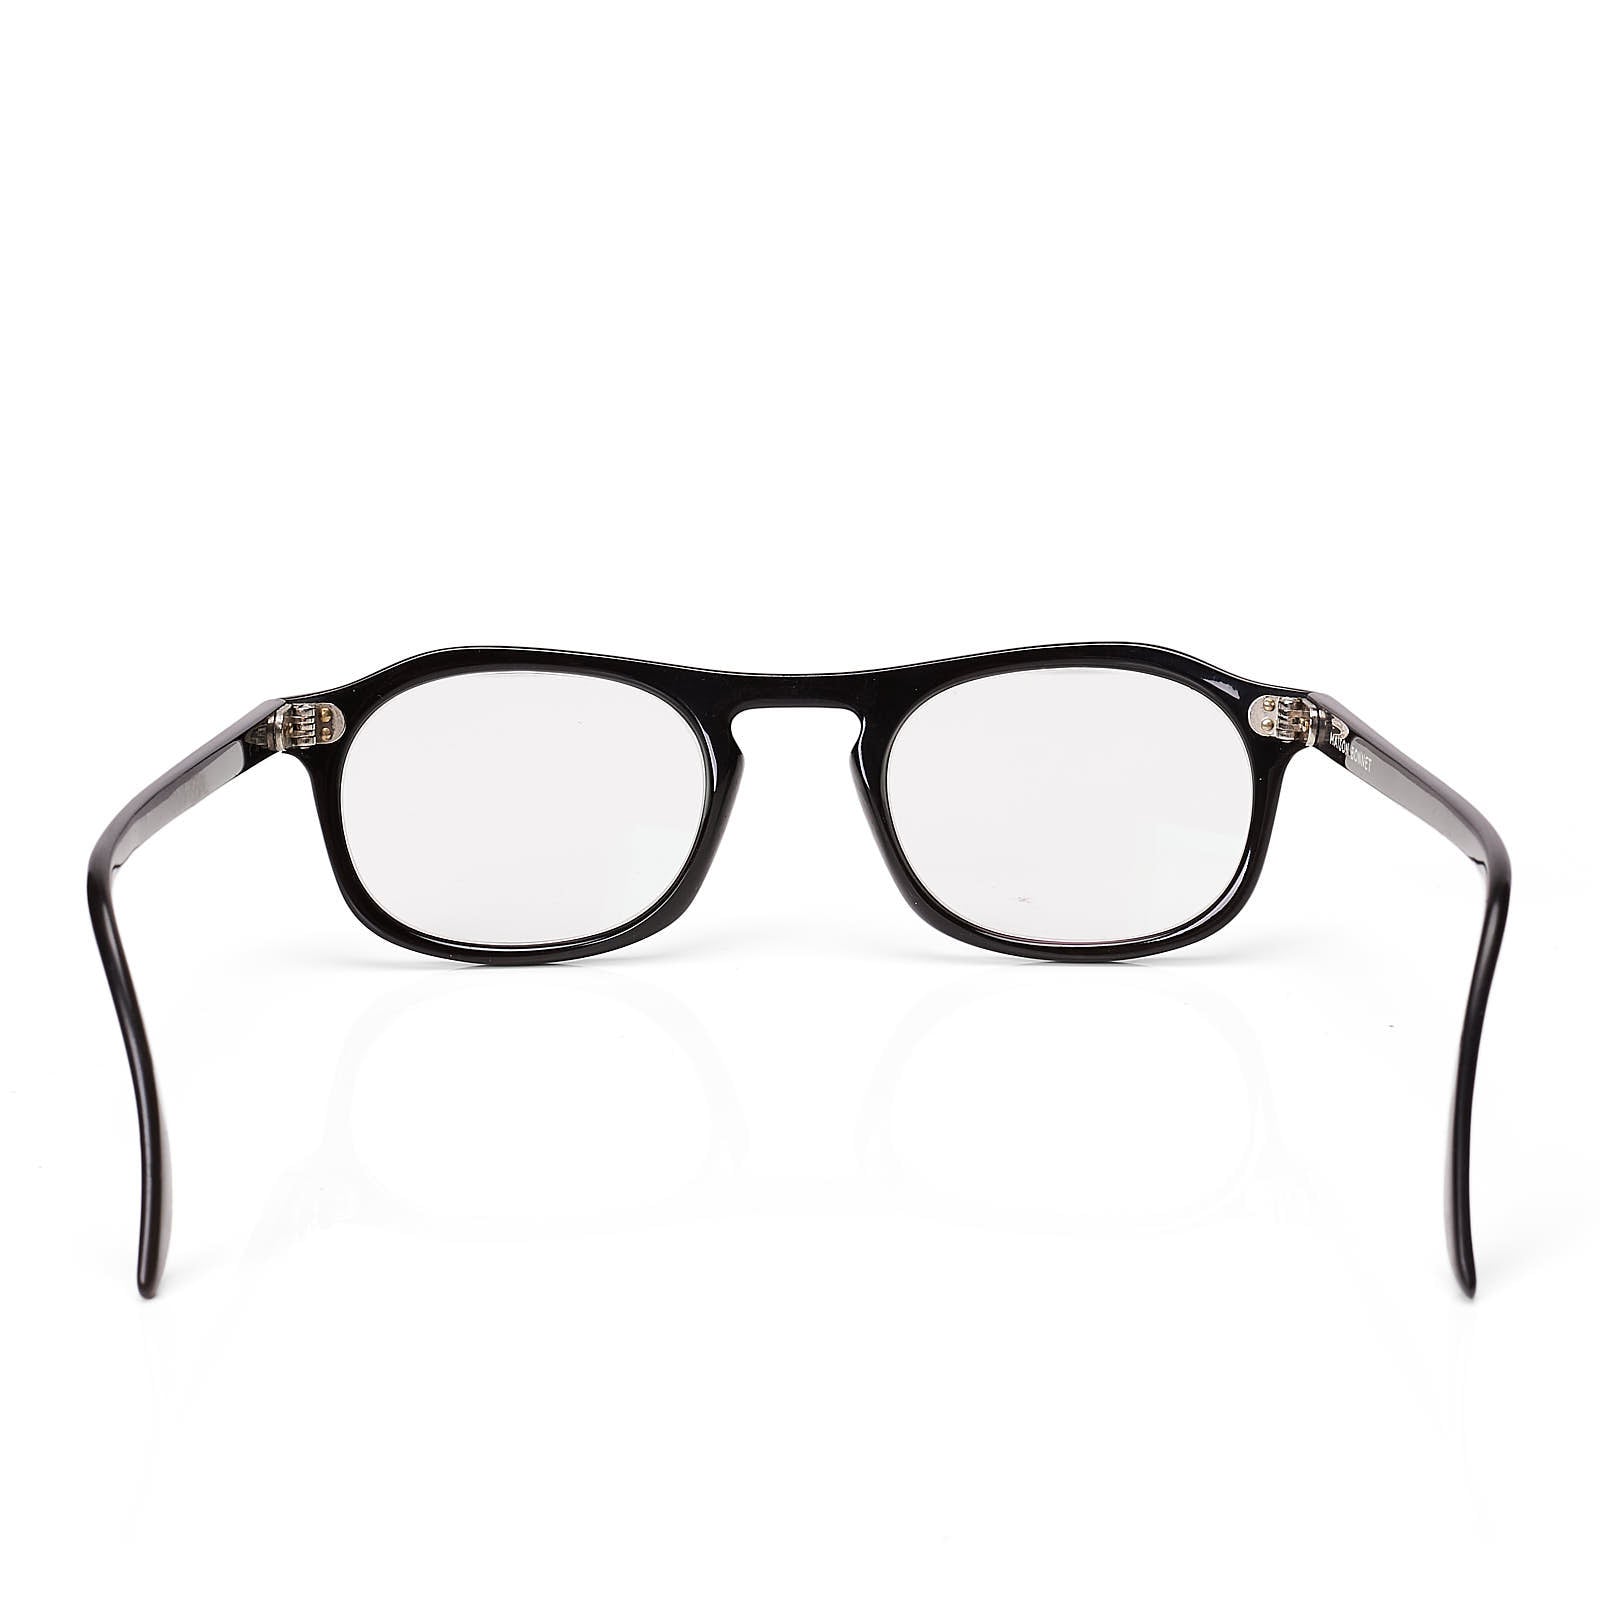 MAISON BONNET Black Acetate Full Frame Rectangular Eyeglasses With Case MAISON BONNET